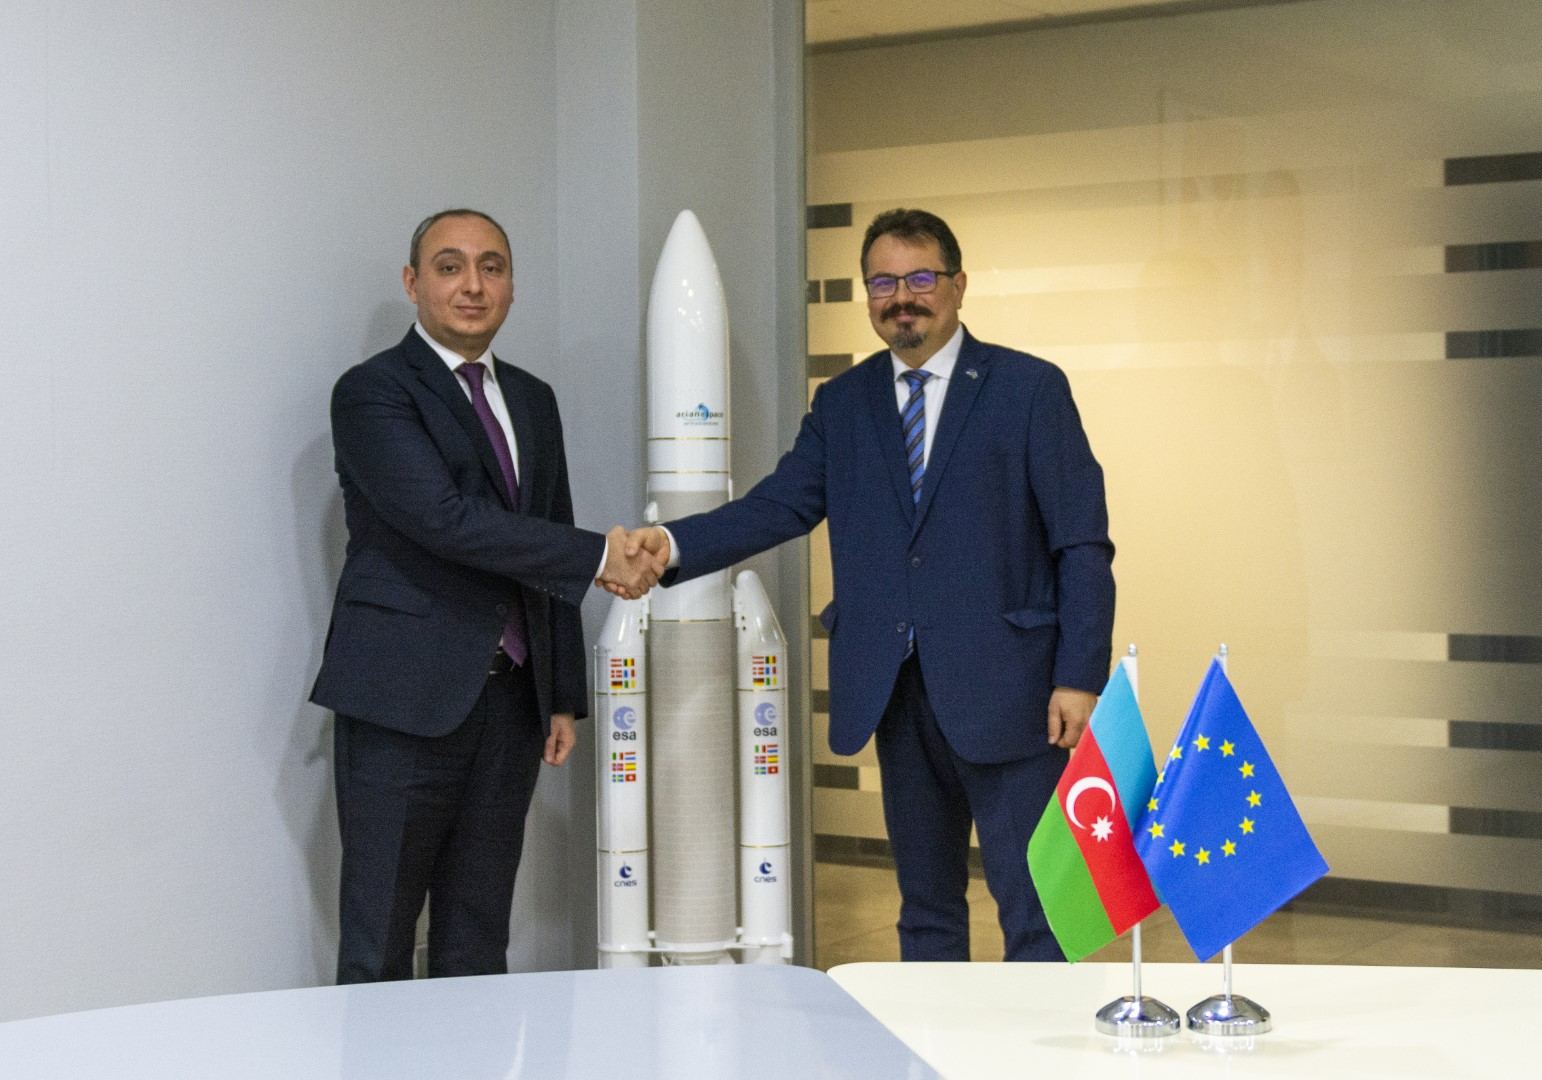 Международный конгресс астронавтики в Баку откроет большие возможности сотрудничества - министерство